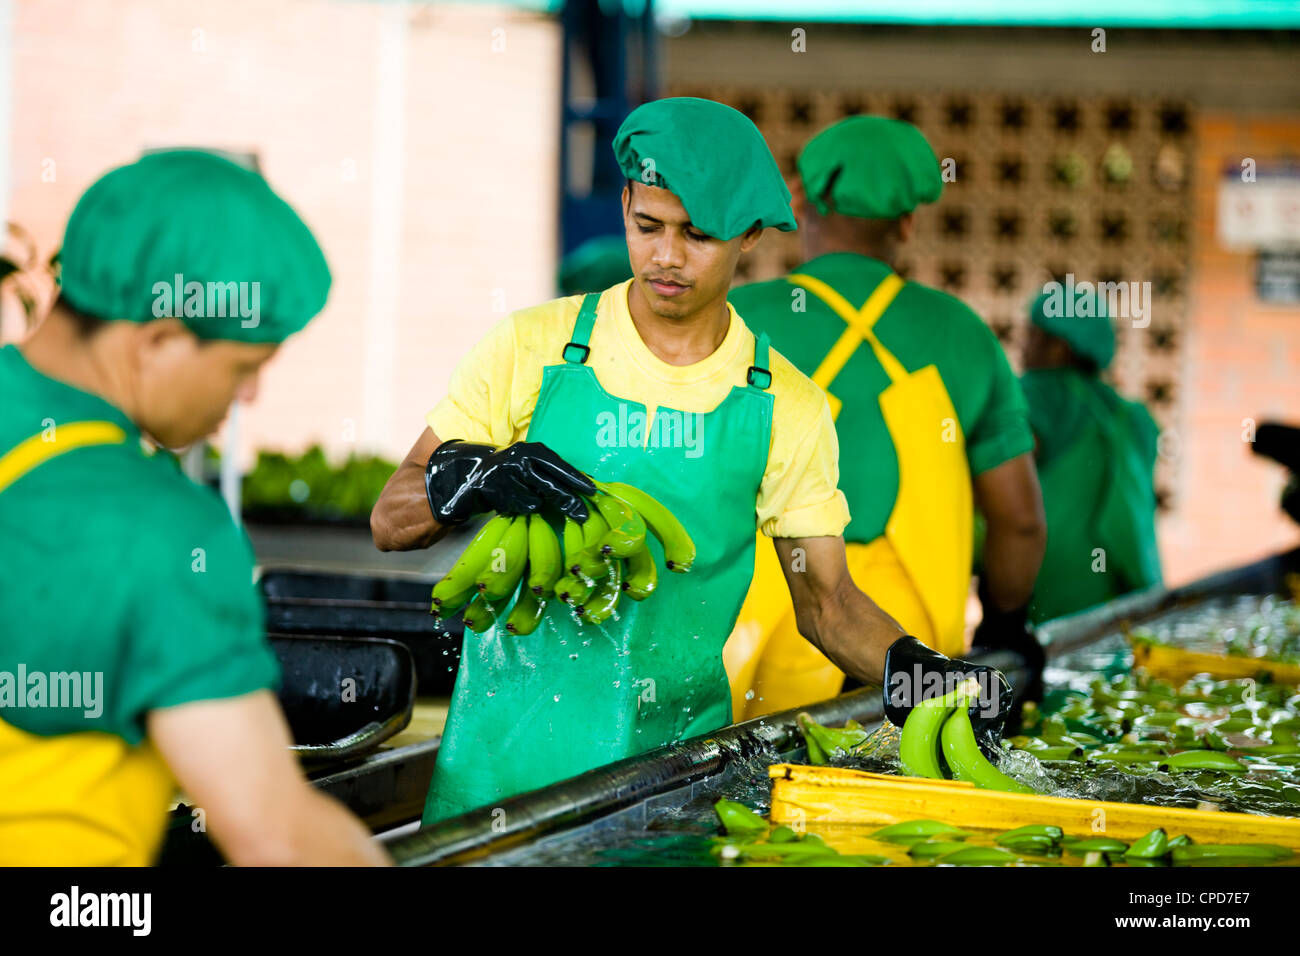 Arbeitnehmer bei einer Fairtrade-Bananen-Plantage waschen und Paket Banane Trauben Stockfoto